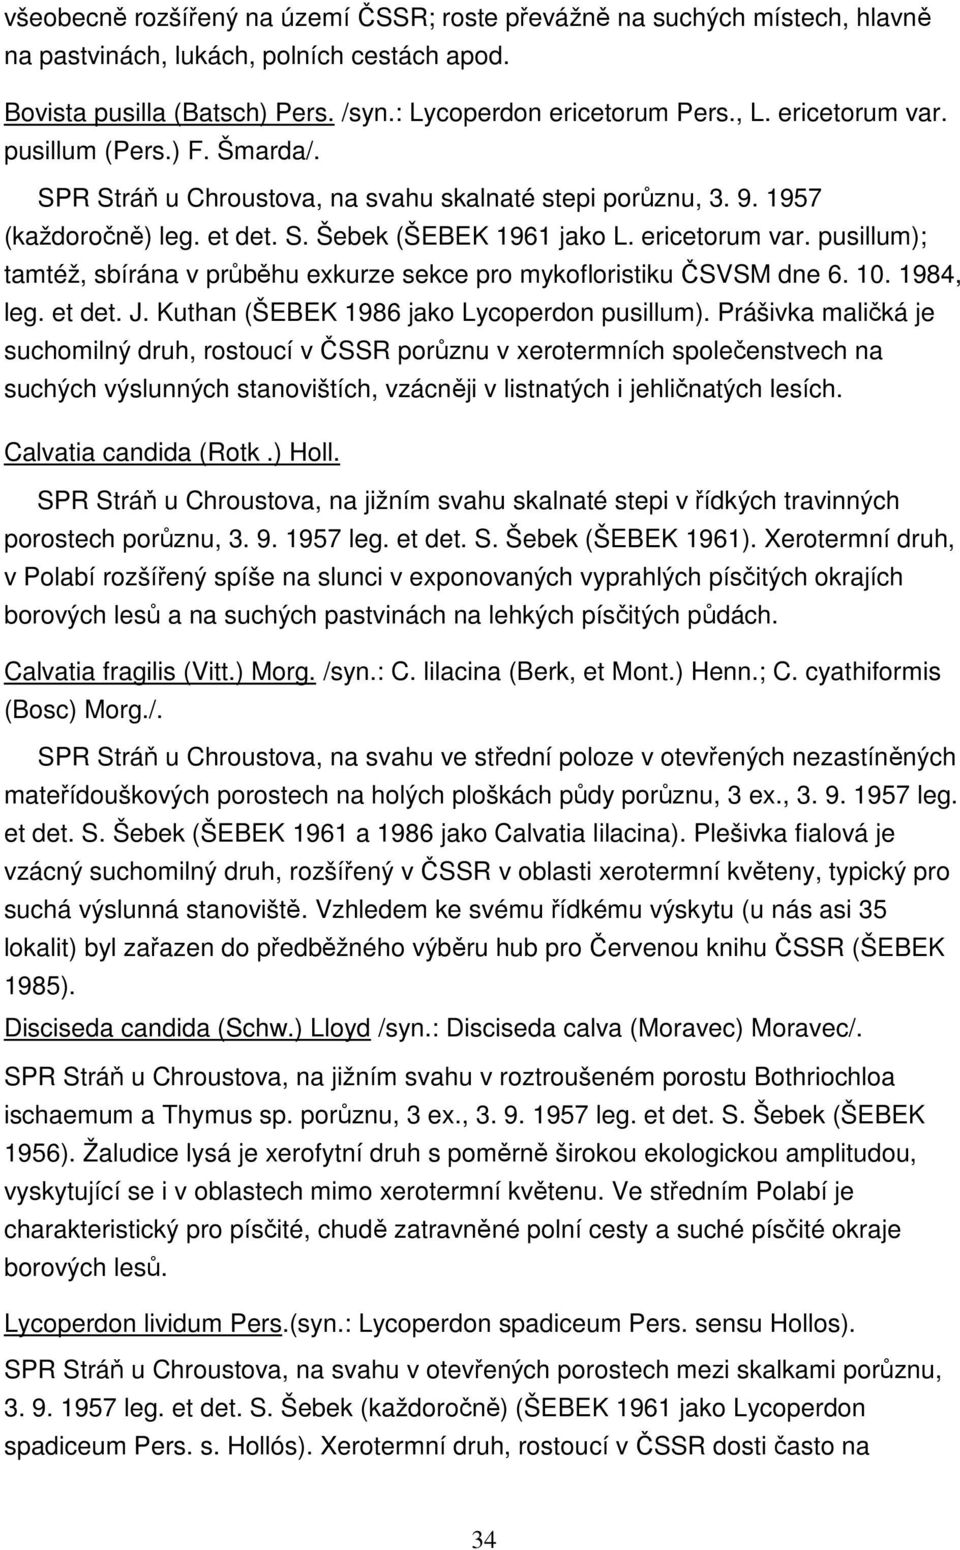 pusillum); tamtéž, sbírána v průběhu exkurze sekce pro mykofloristiku ČSVSM dne 6. 10. 1984, leg. et det. J. Kuthan (ŠEBEK 1986 jako Lycoperdon pusillum).